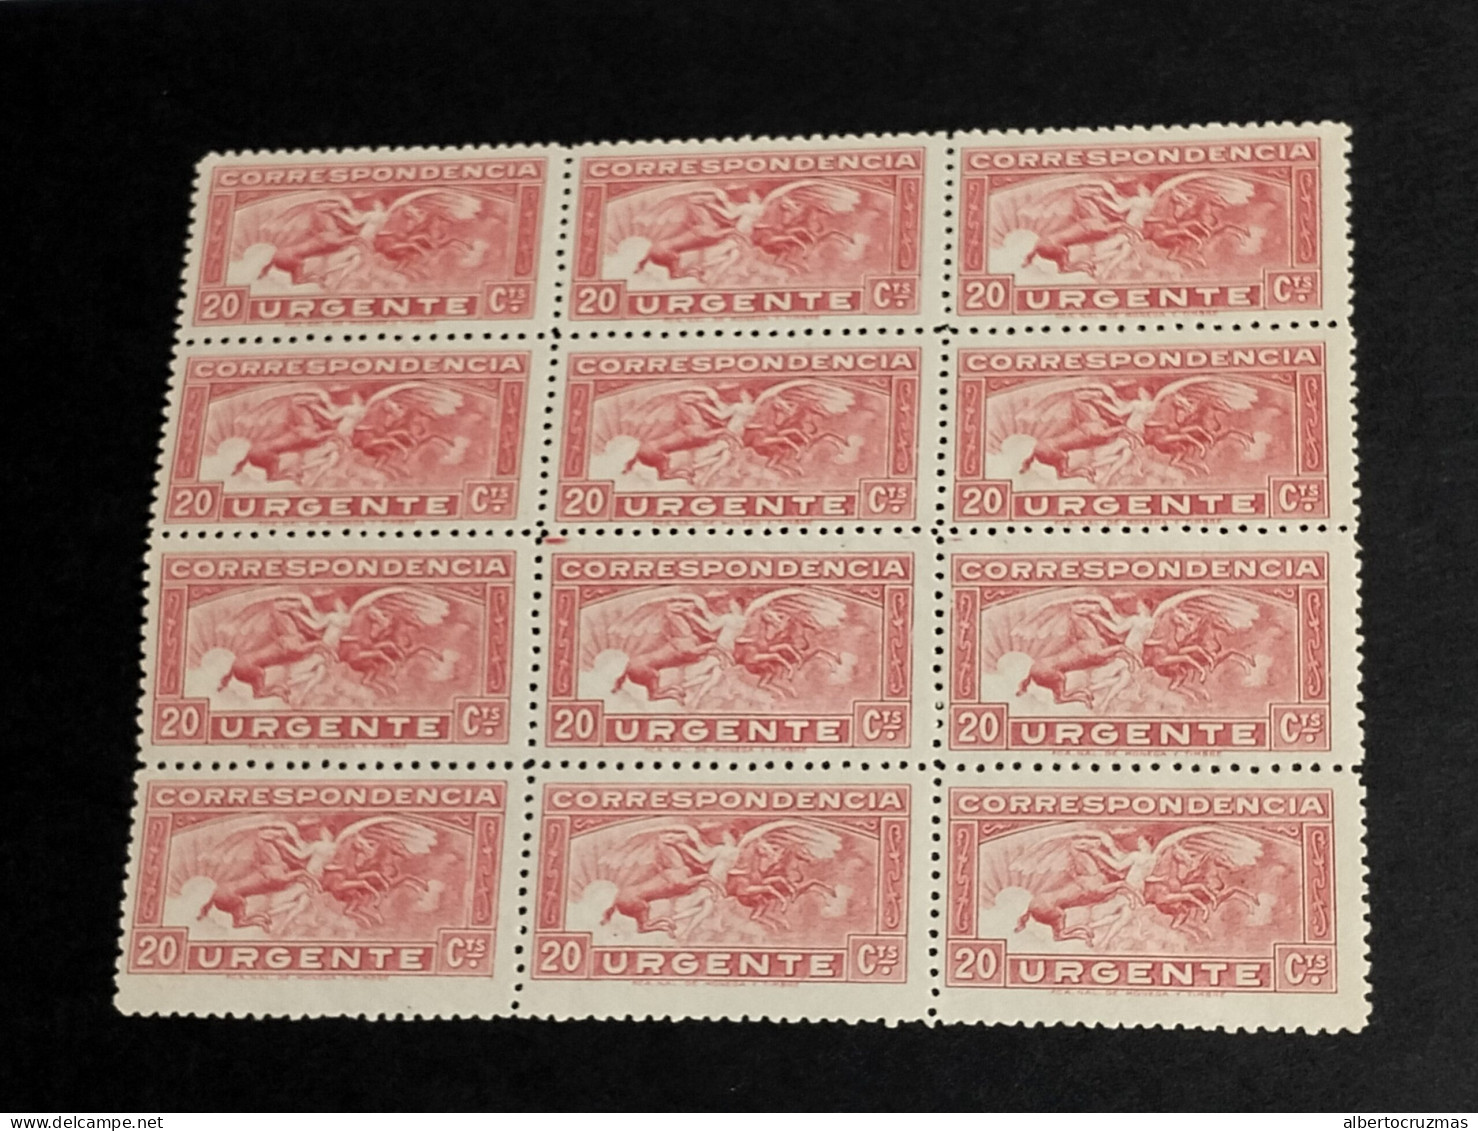 España Lote 12 SELLOS Angel Y Caballos Urgente Edifil 679 SELLOS Año 1933 Sellos Nuevos ***MNH - Unused Stamps